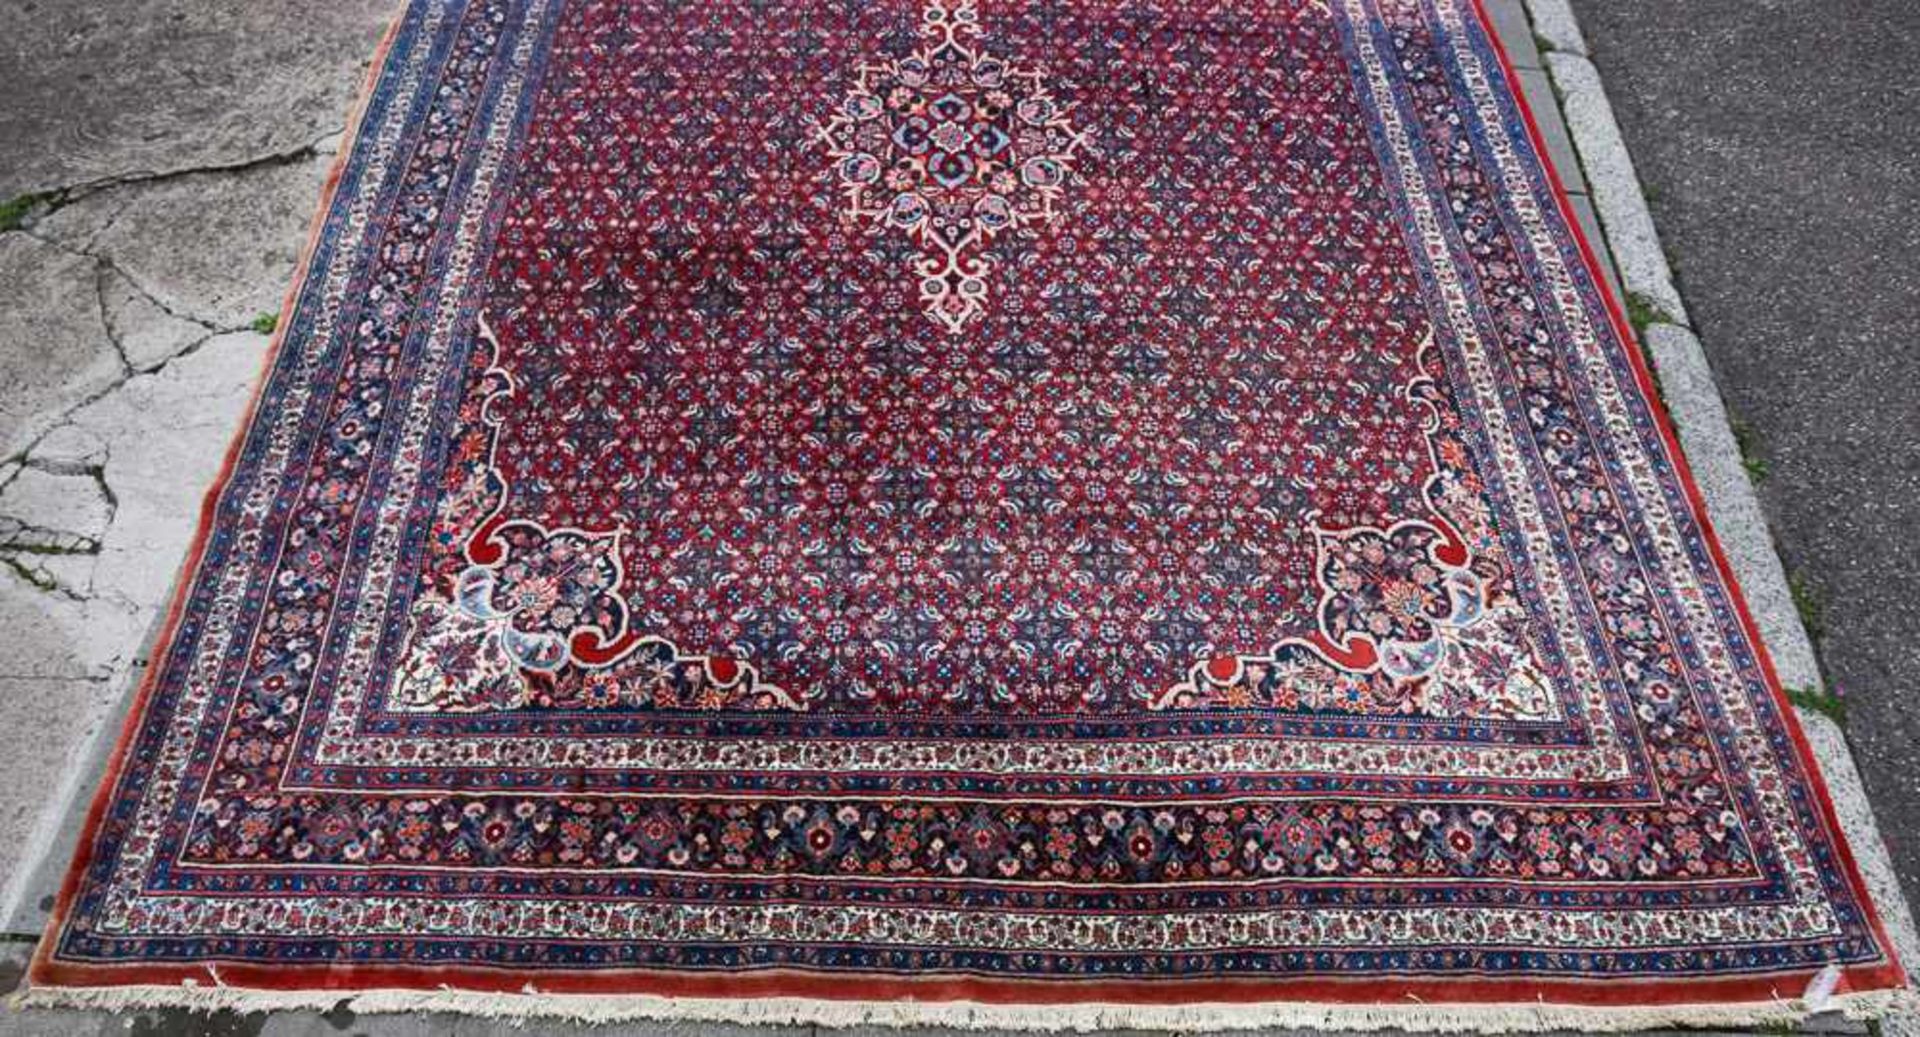 TEPPICH 15, Baumwolle, Iran, 20. Jahrhundert 400 x 275 cm Guter Erhaltungszustand. - Bild 7 aus 8